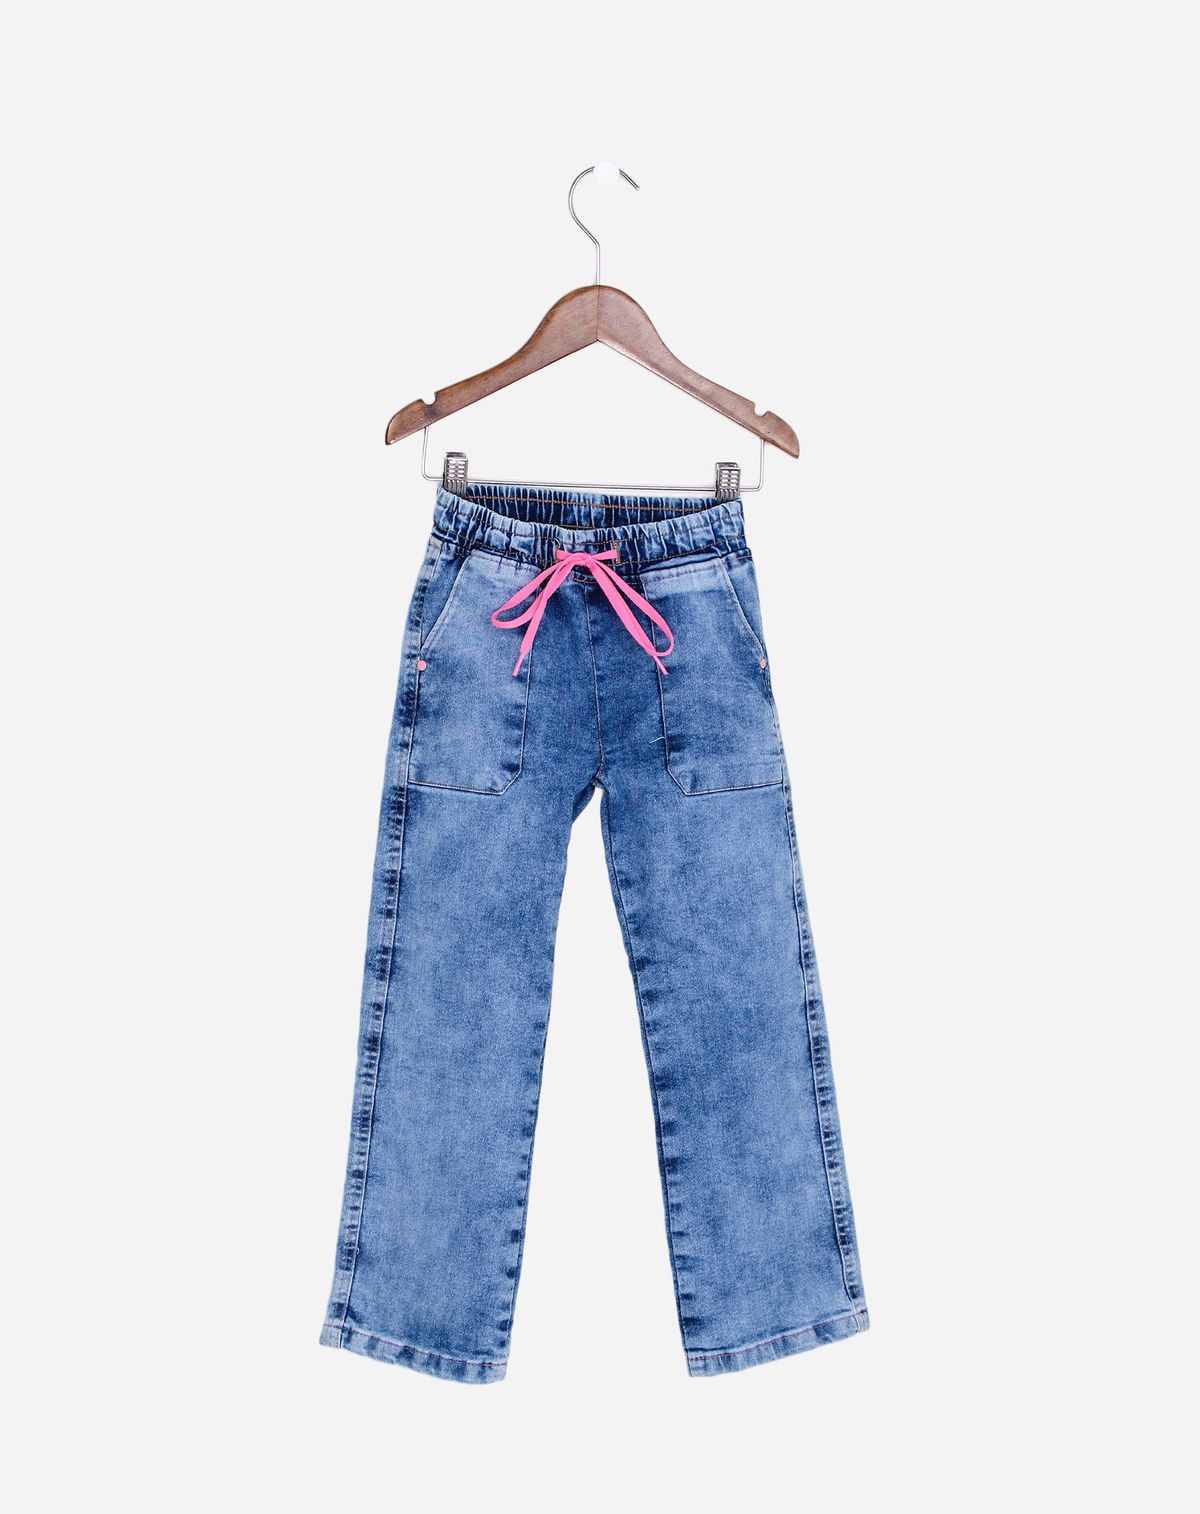 699562001-calca-jeans-reta-infantil-menina-cos-elastico-jeans-4-a42